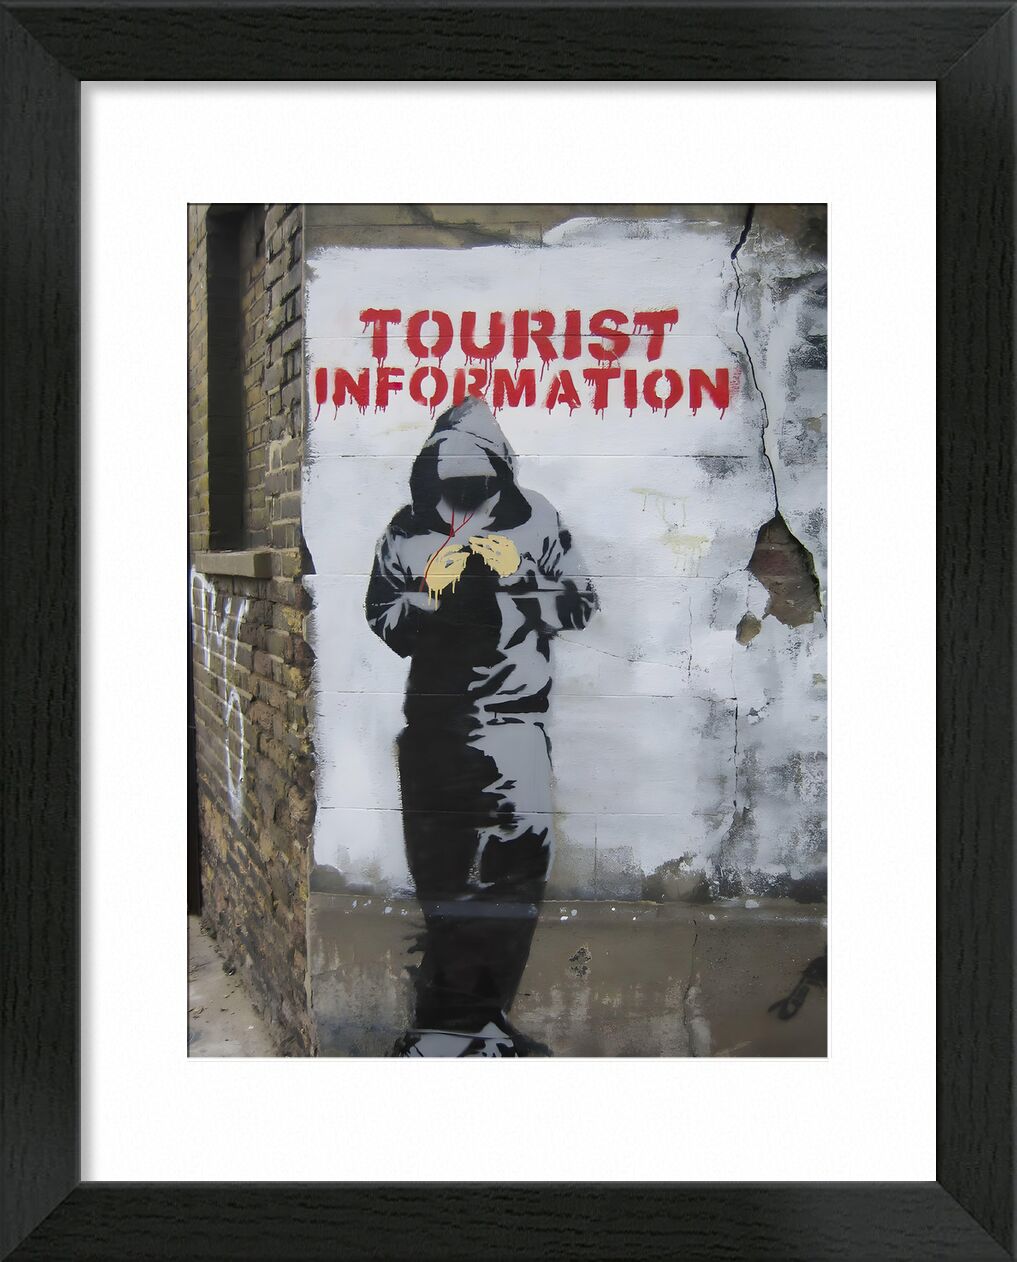 Tourist Information - BANKSY von Bildende Kunst, Prodi Art, Mauer, Tourismus, Straßenkunst, banksy